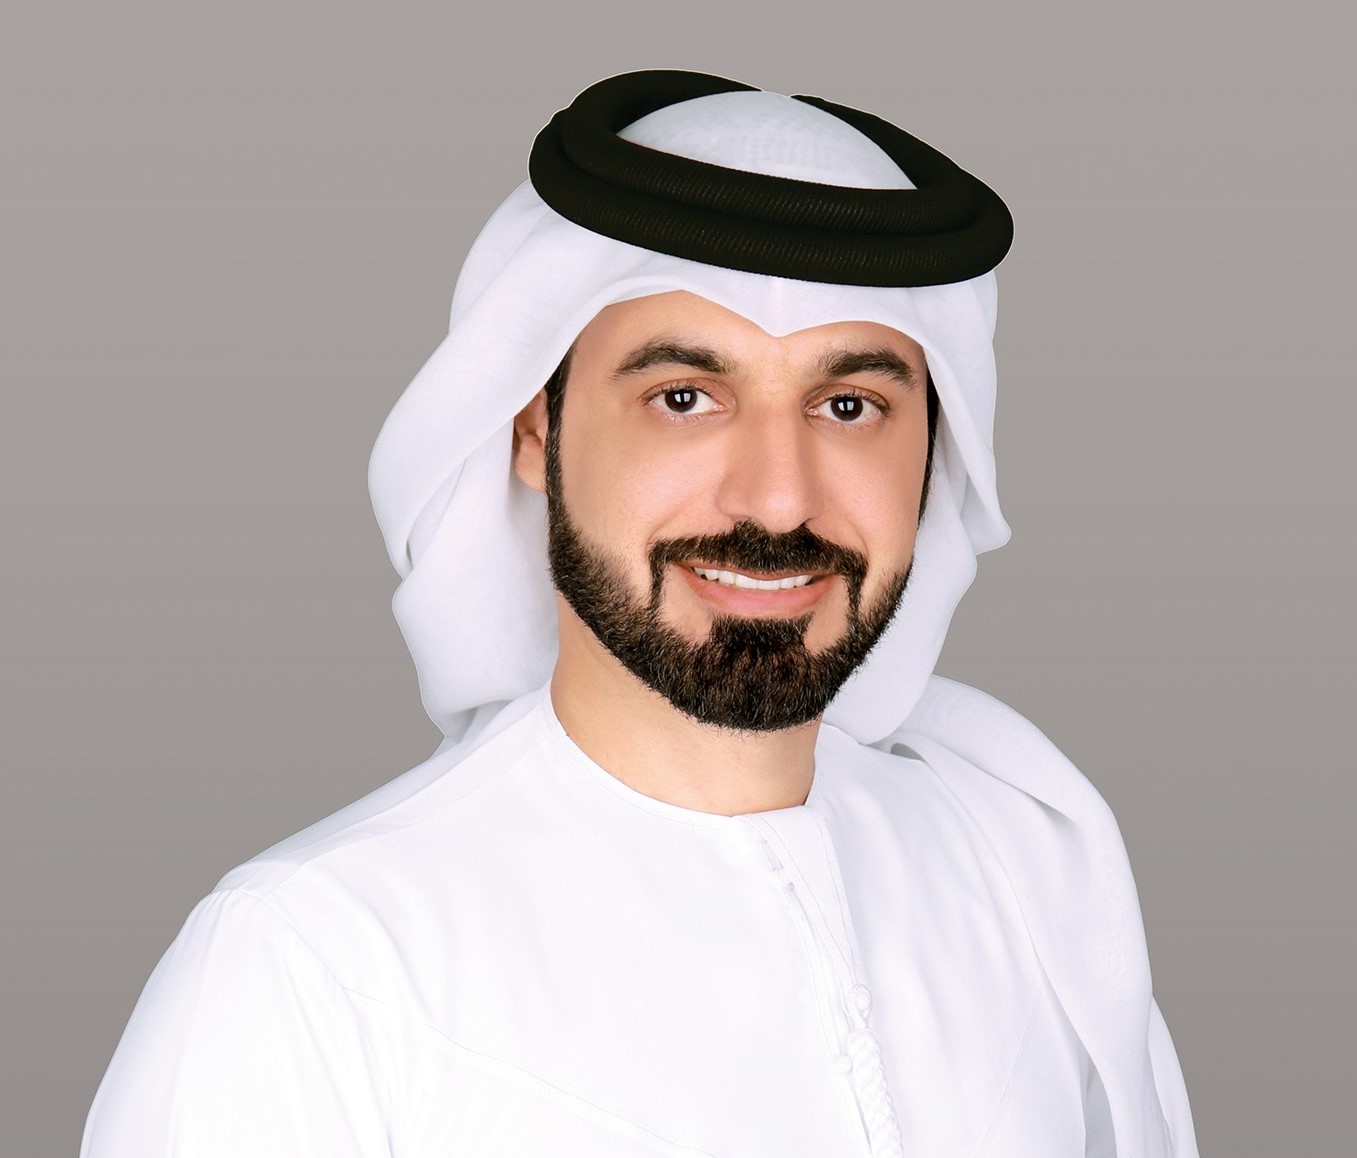 الصورة: طارق الجناحي نائب المدير التنفيذي لمركز دبي للإحصاء الرئيس التنفيذي للسعادة وجودة الحياة